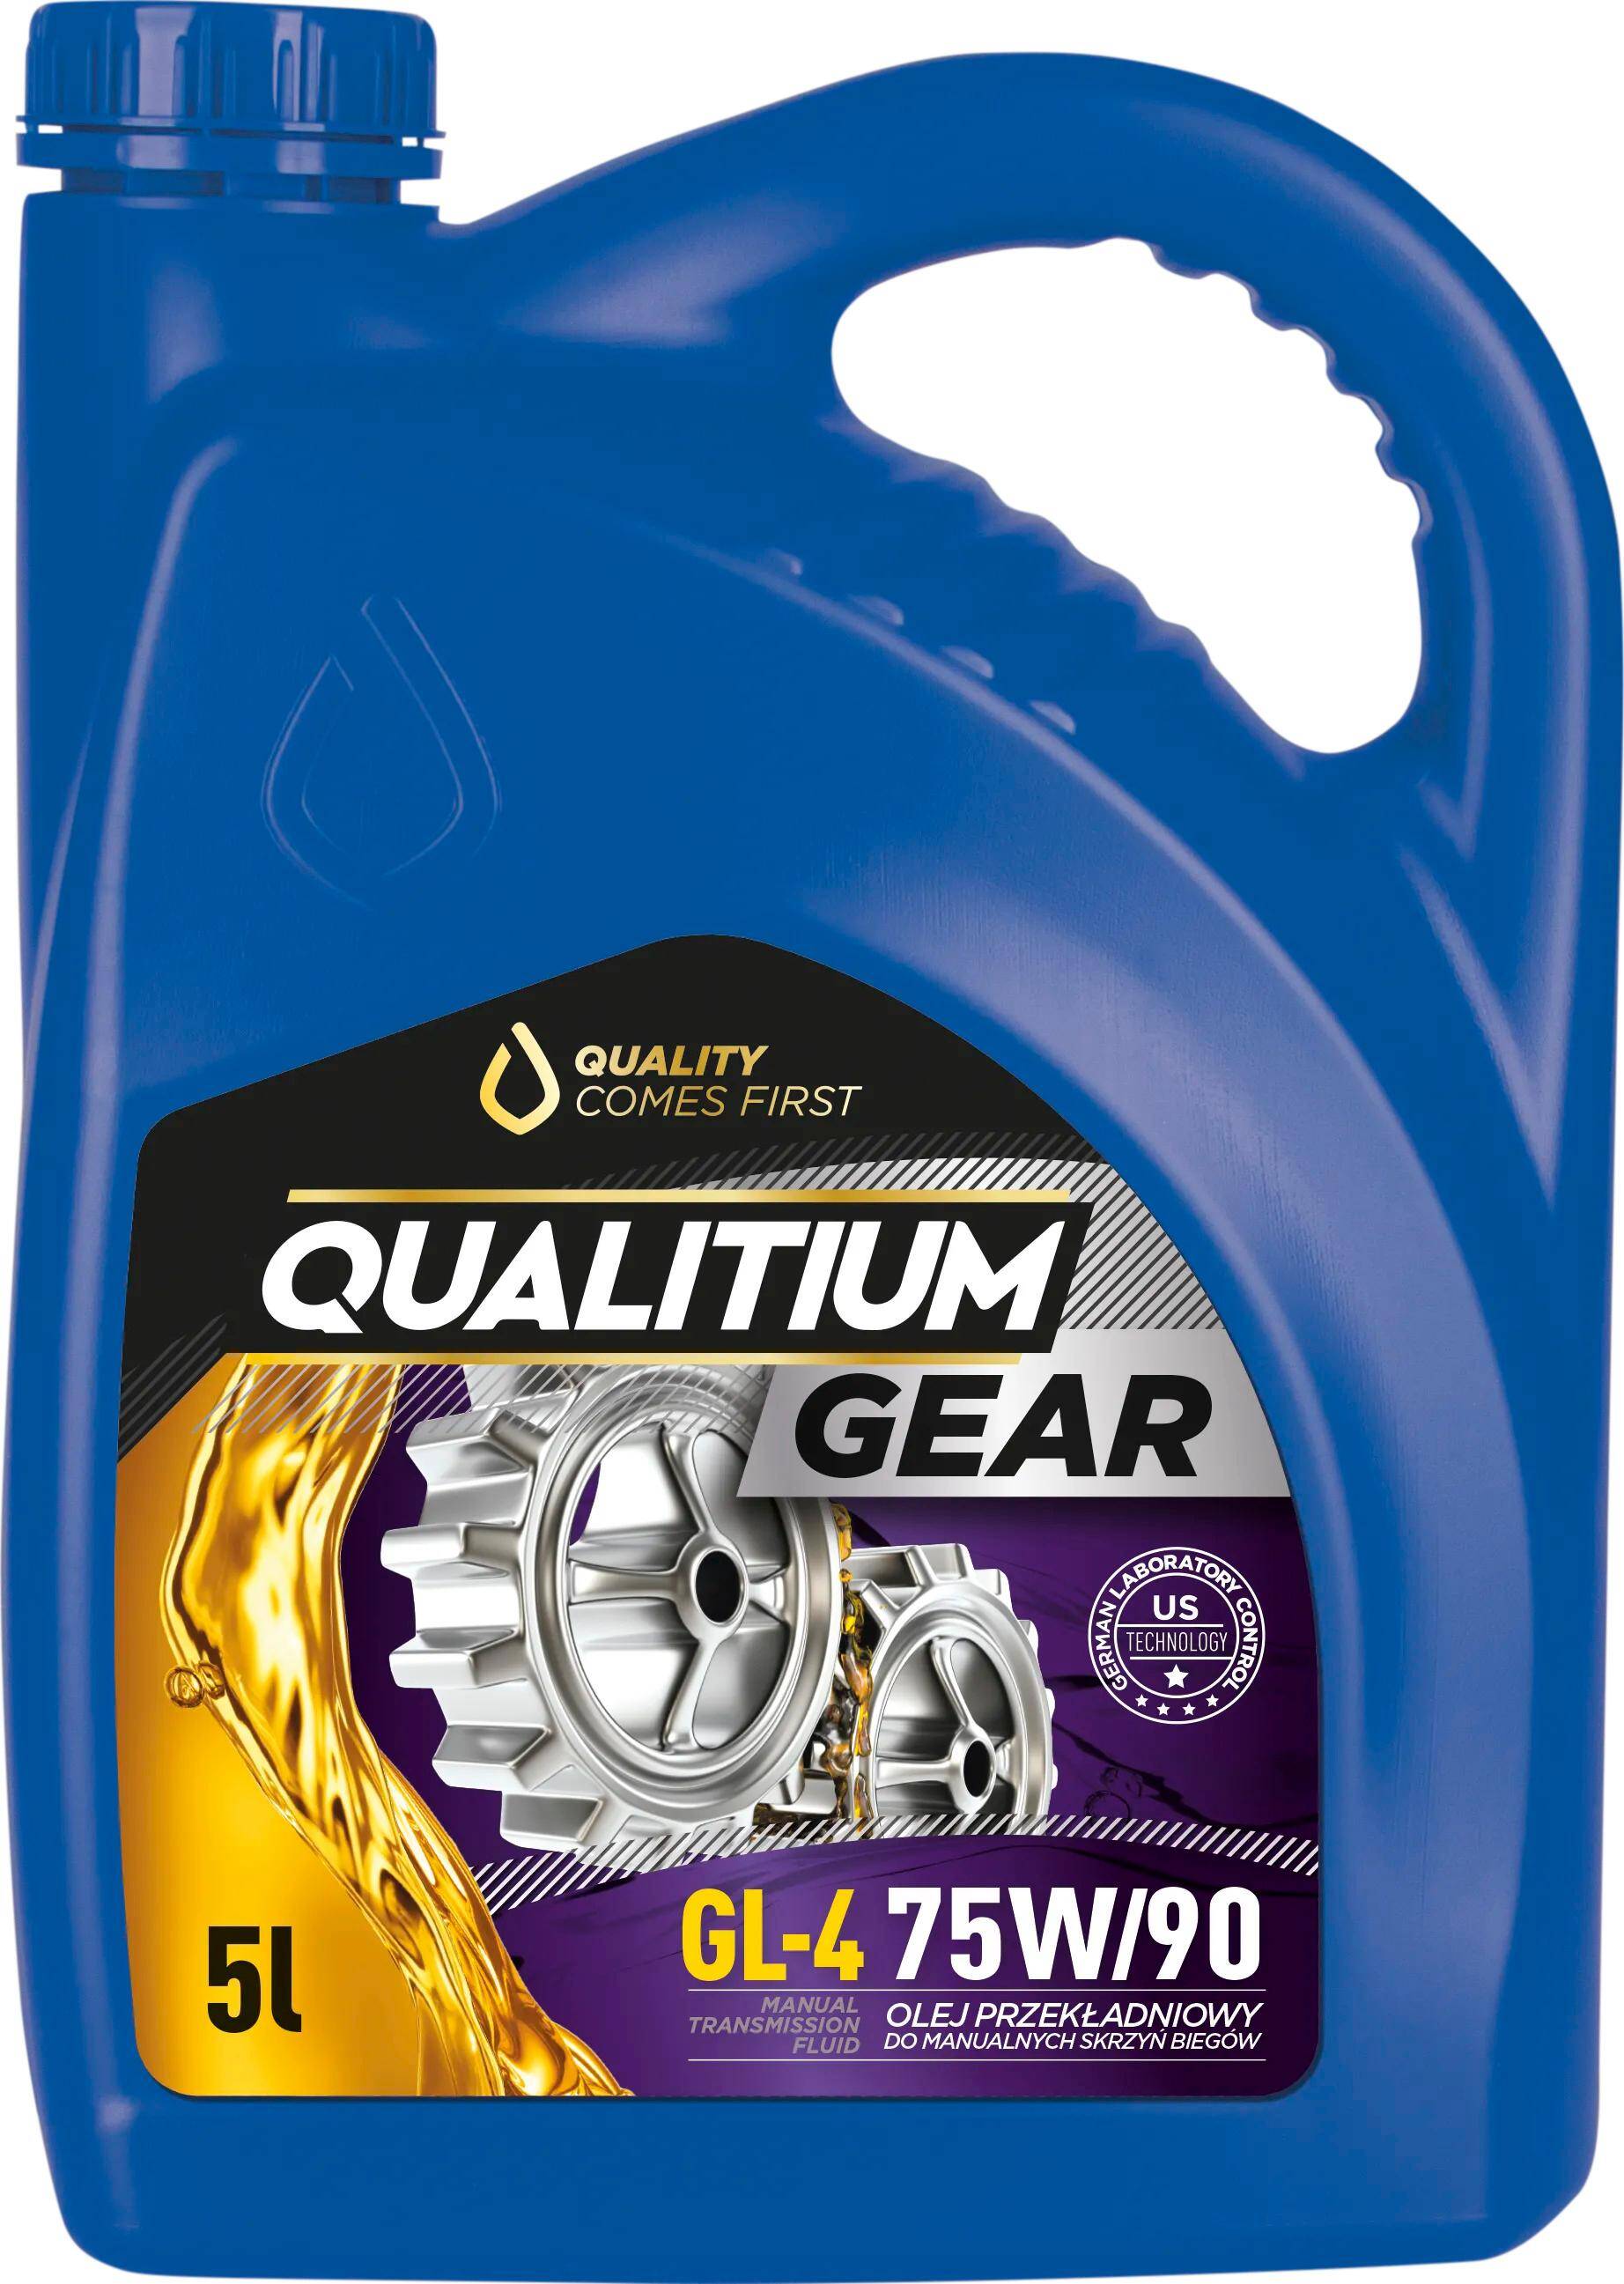 Qualitium Gear GL4 75W90 5L